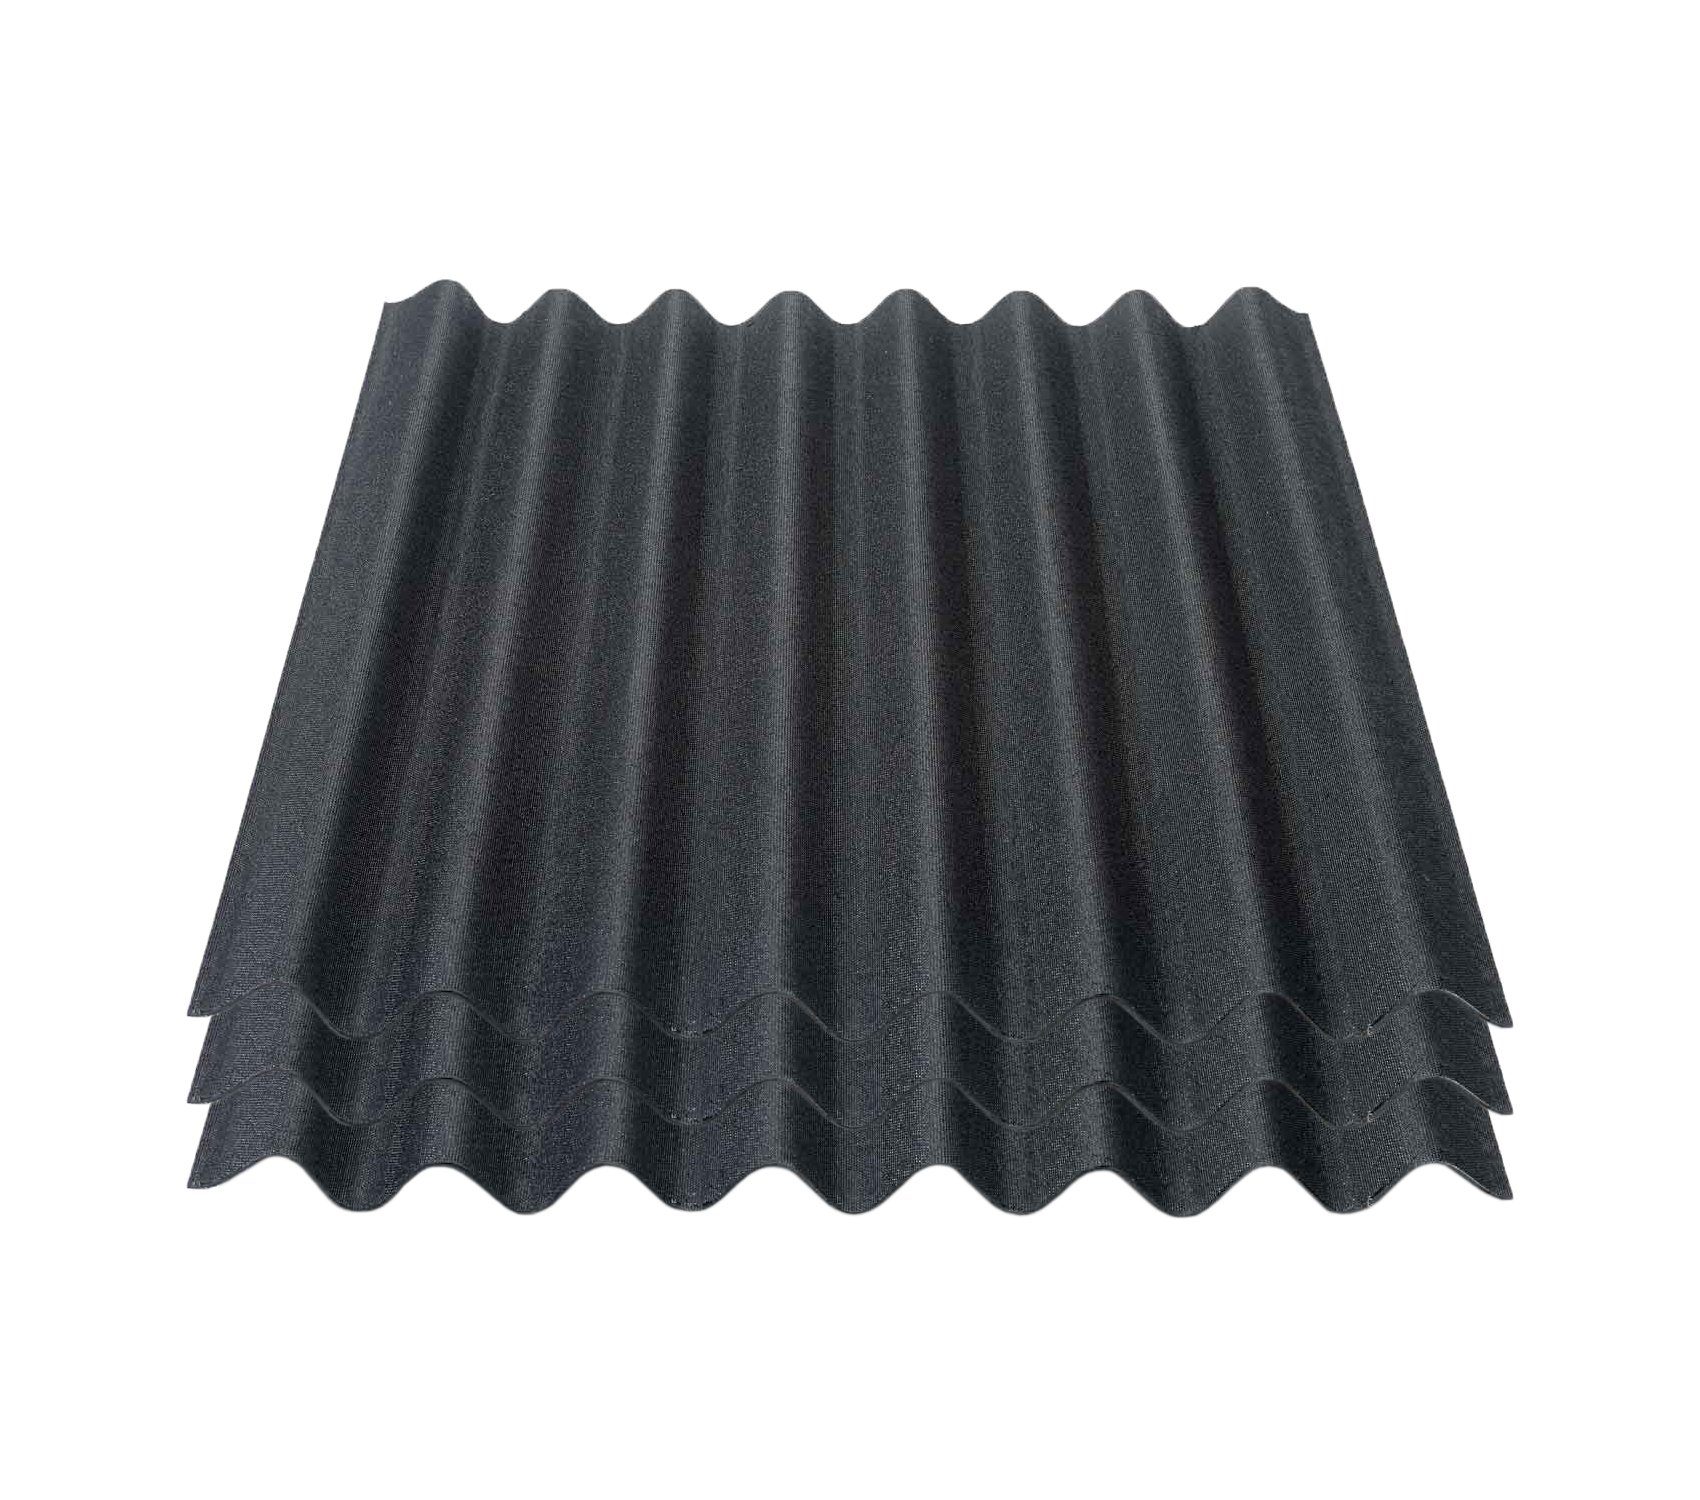 Onduline Dachpappe Onduline Easyline Dachplatte Wandplatte Bitumenwellplatten Wellplatte 3x0,76m² - schwarz, wellig, 2.28 m² pro Paket, (3-St)